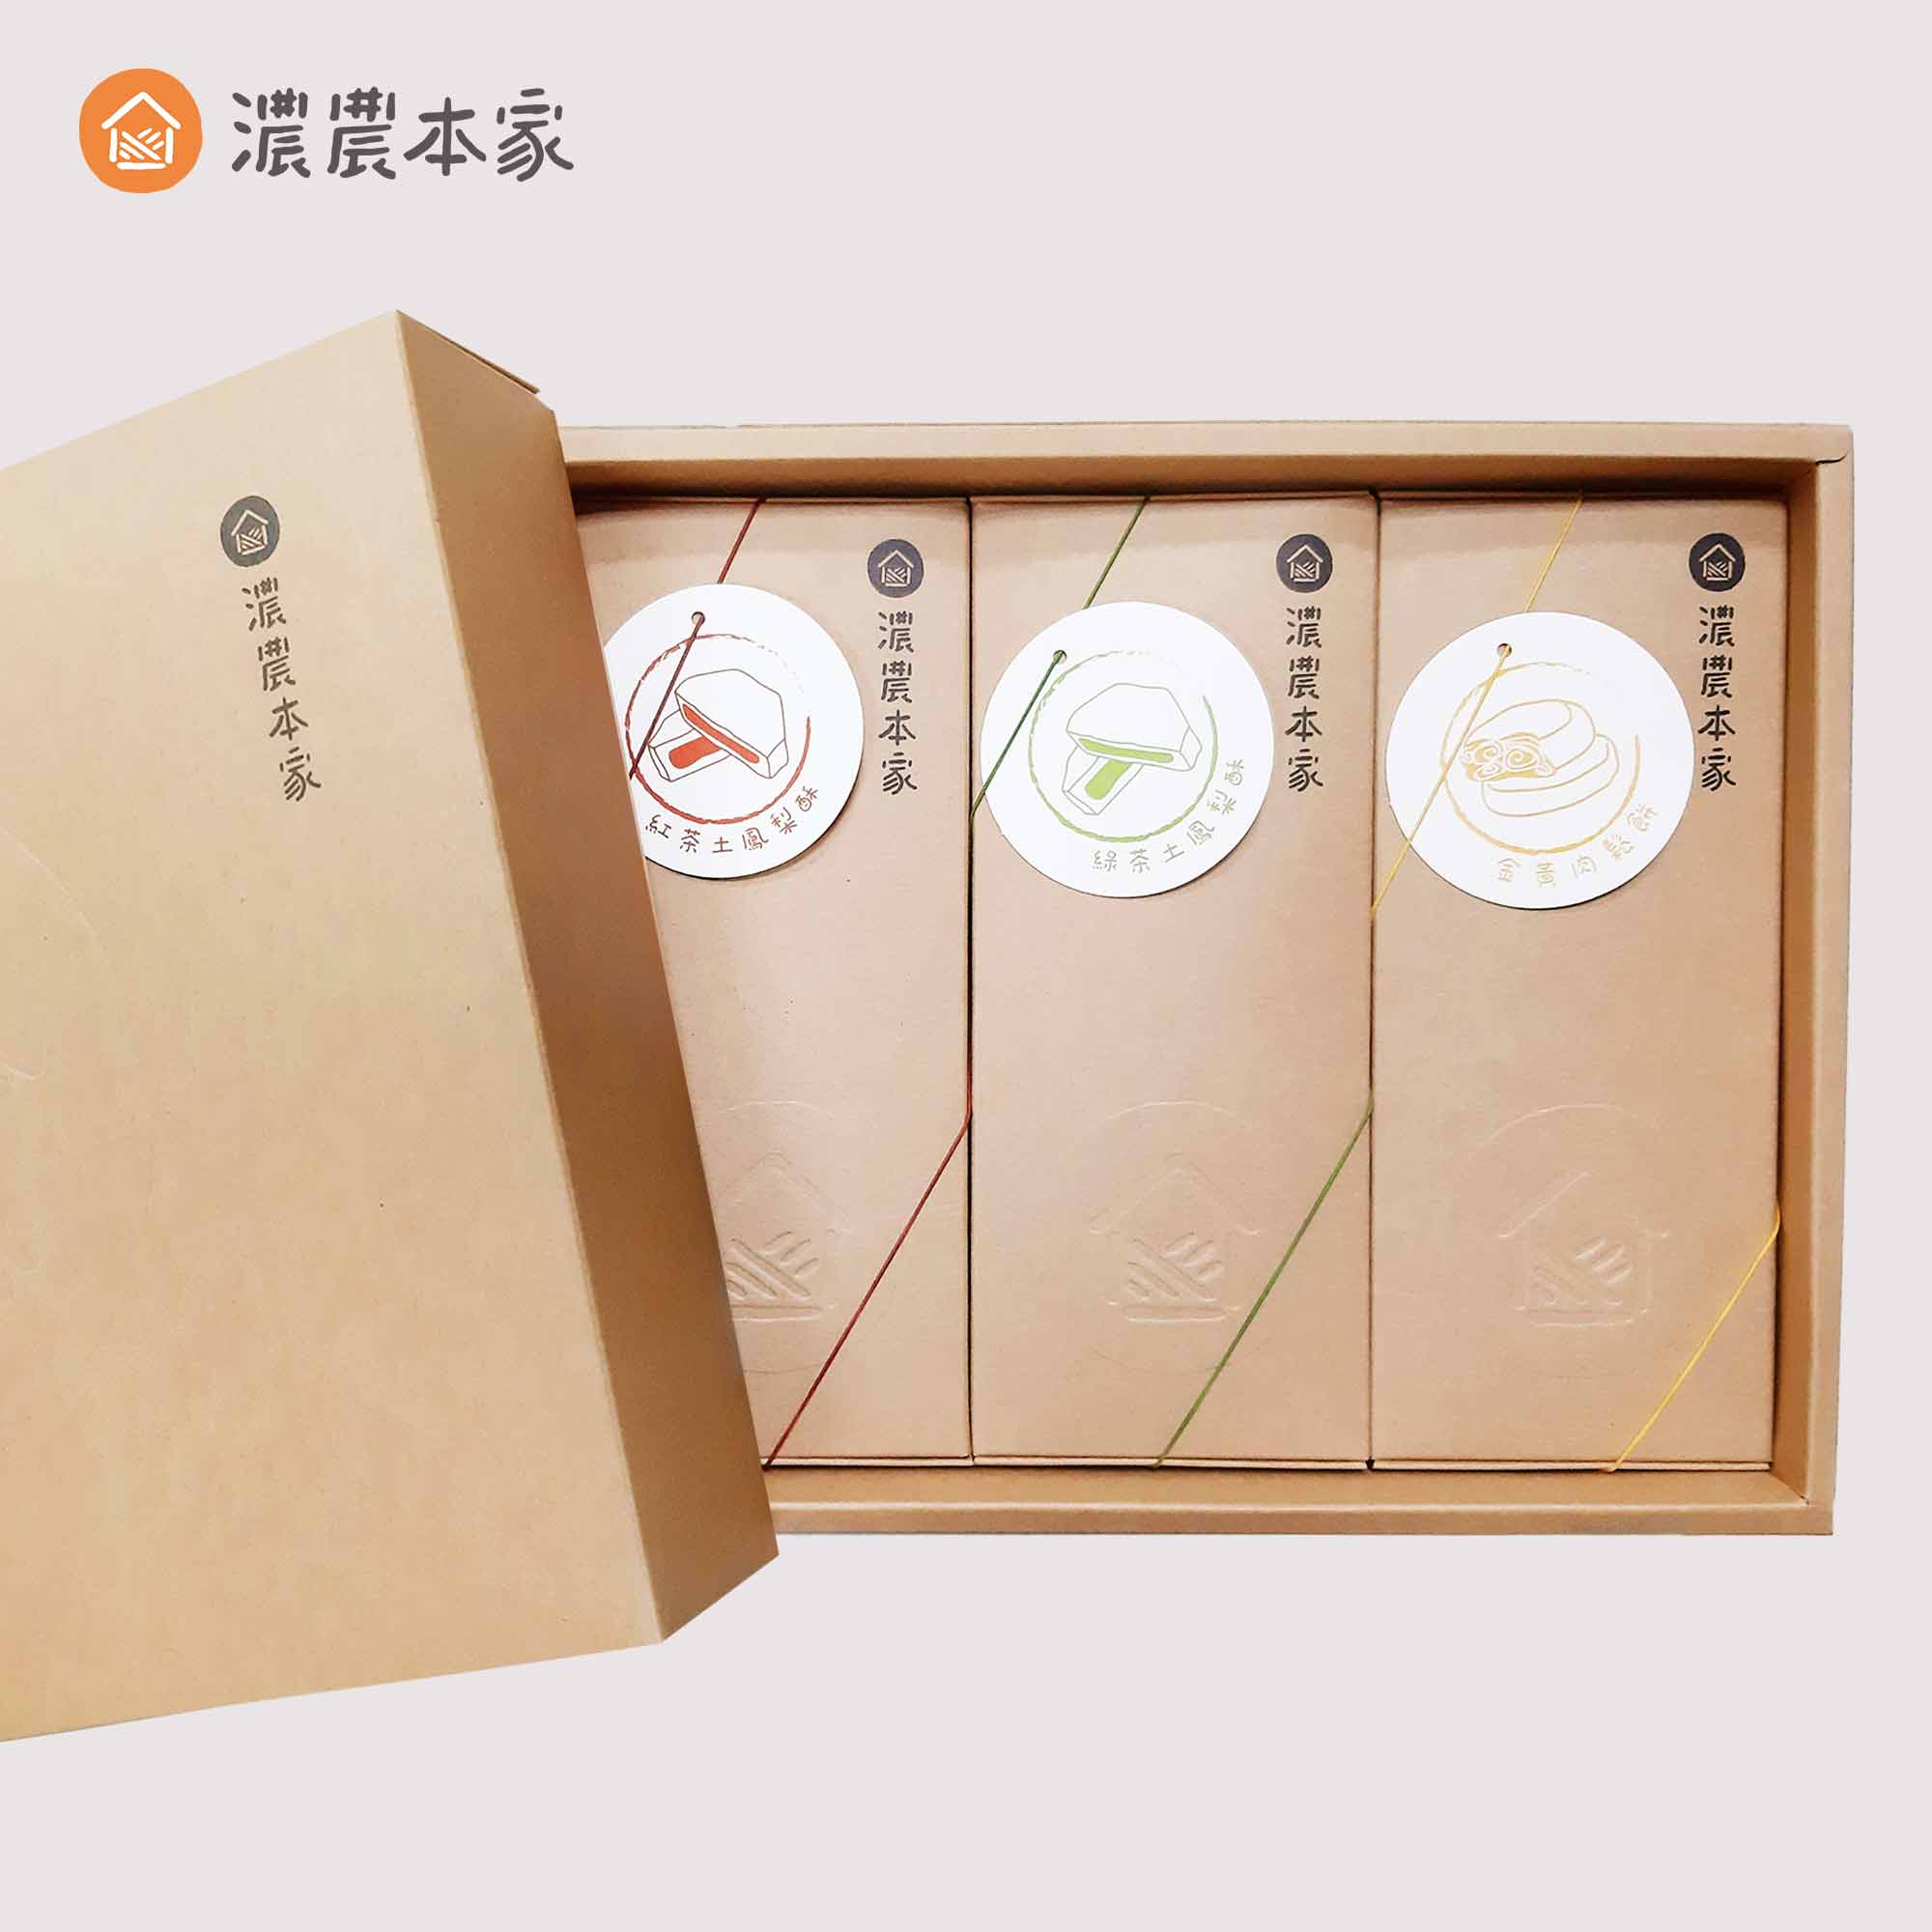 春節送禮推薦人氣過年禮盒排行榜第一名老人家最喜歡的台灣茶葉鳳梨酥伴手禮盒